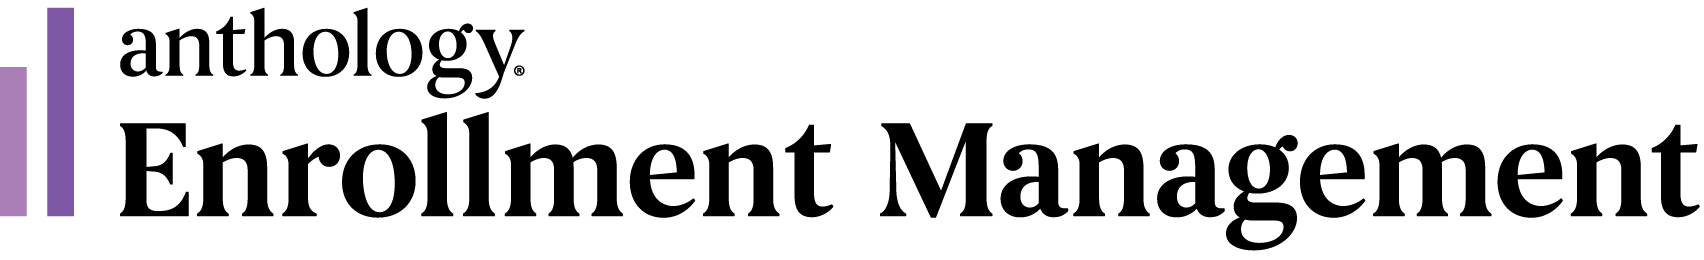 Anthology Enrollment Management logo with trademark